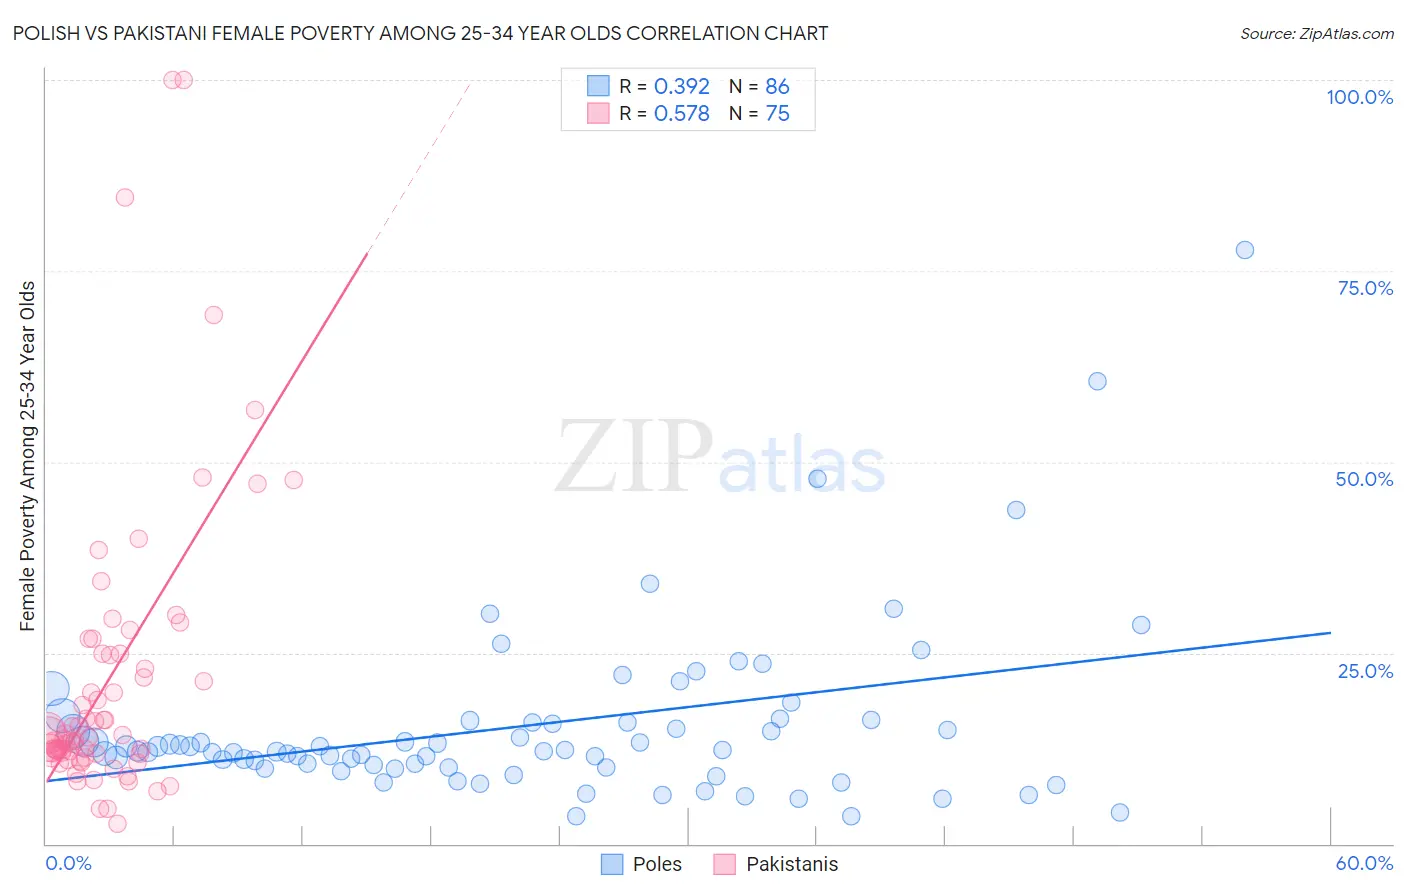 Polish vs Pakistani Female Poverty Among 25-34 Year Olds